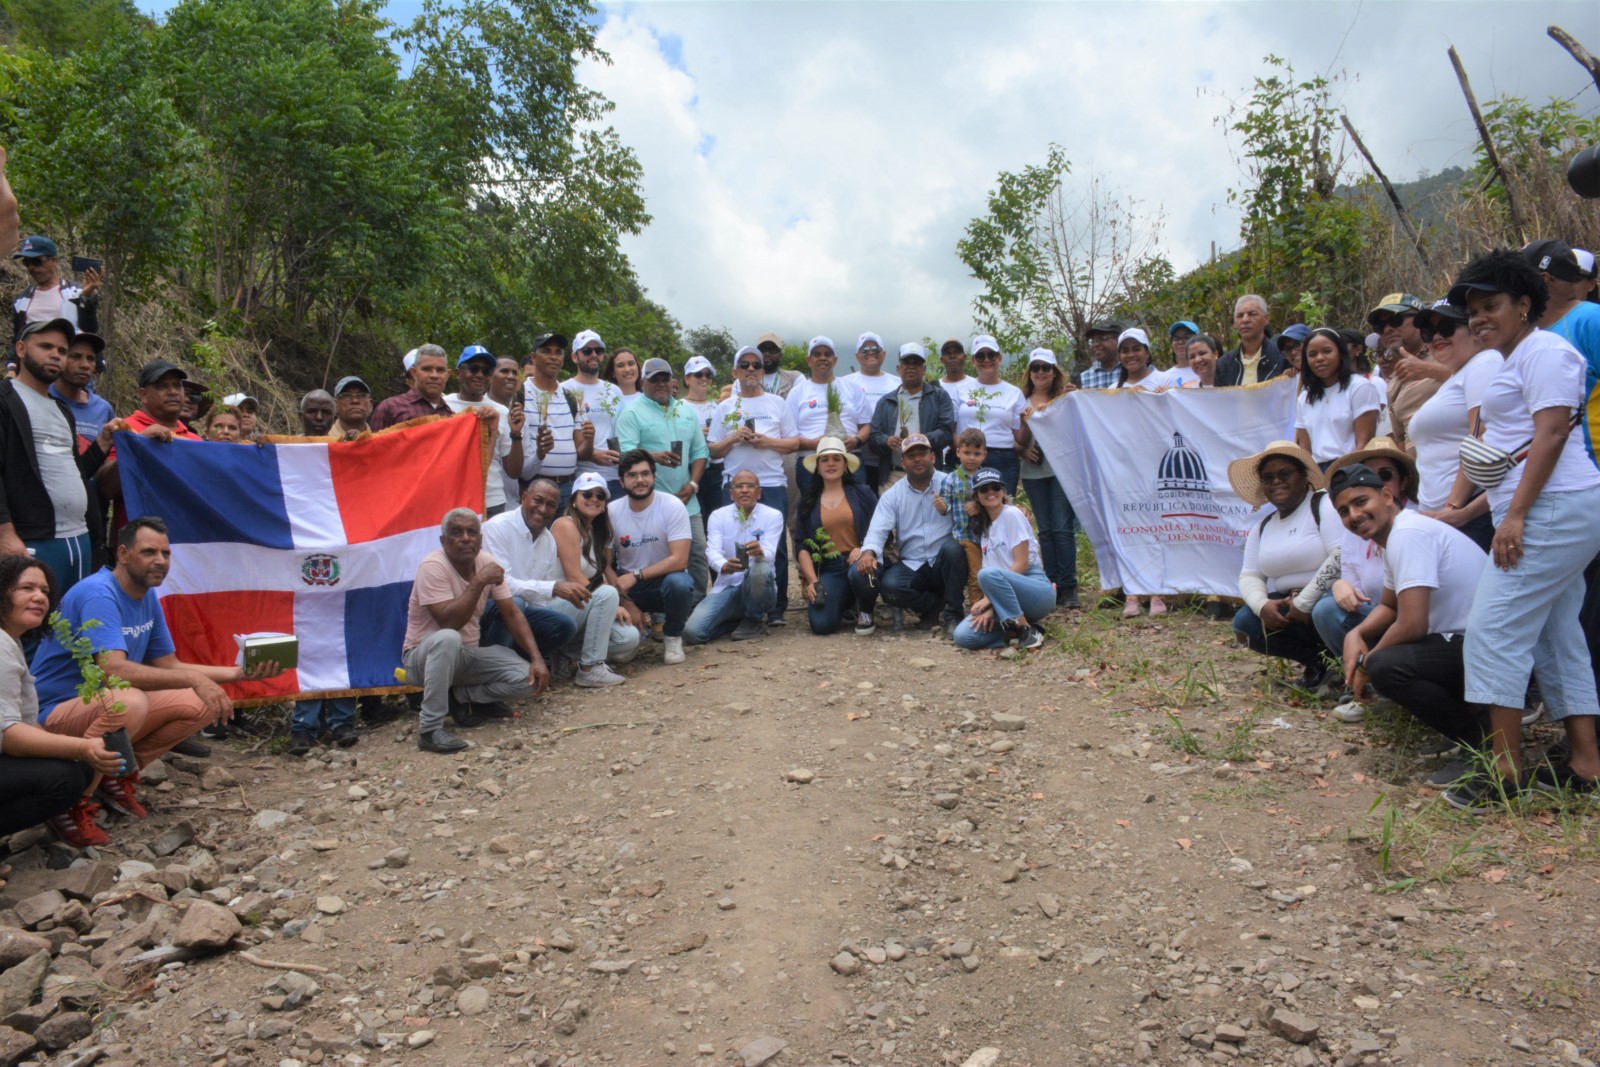 Colaboradores y colaboradoras del Ministerio de Economía reforestaron en la comunidad de Peralta, en el marco de la primera jornada de reforestación del Voluntariado de la institución.